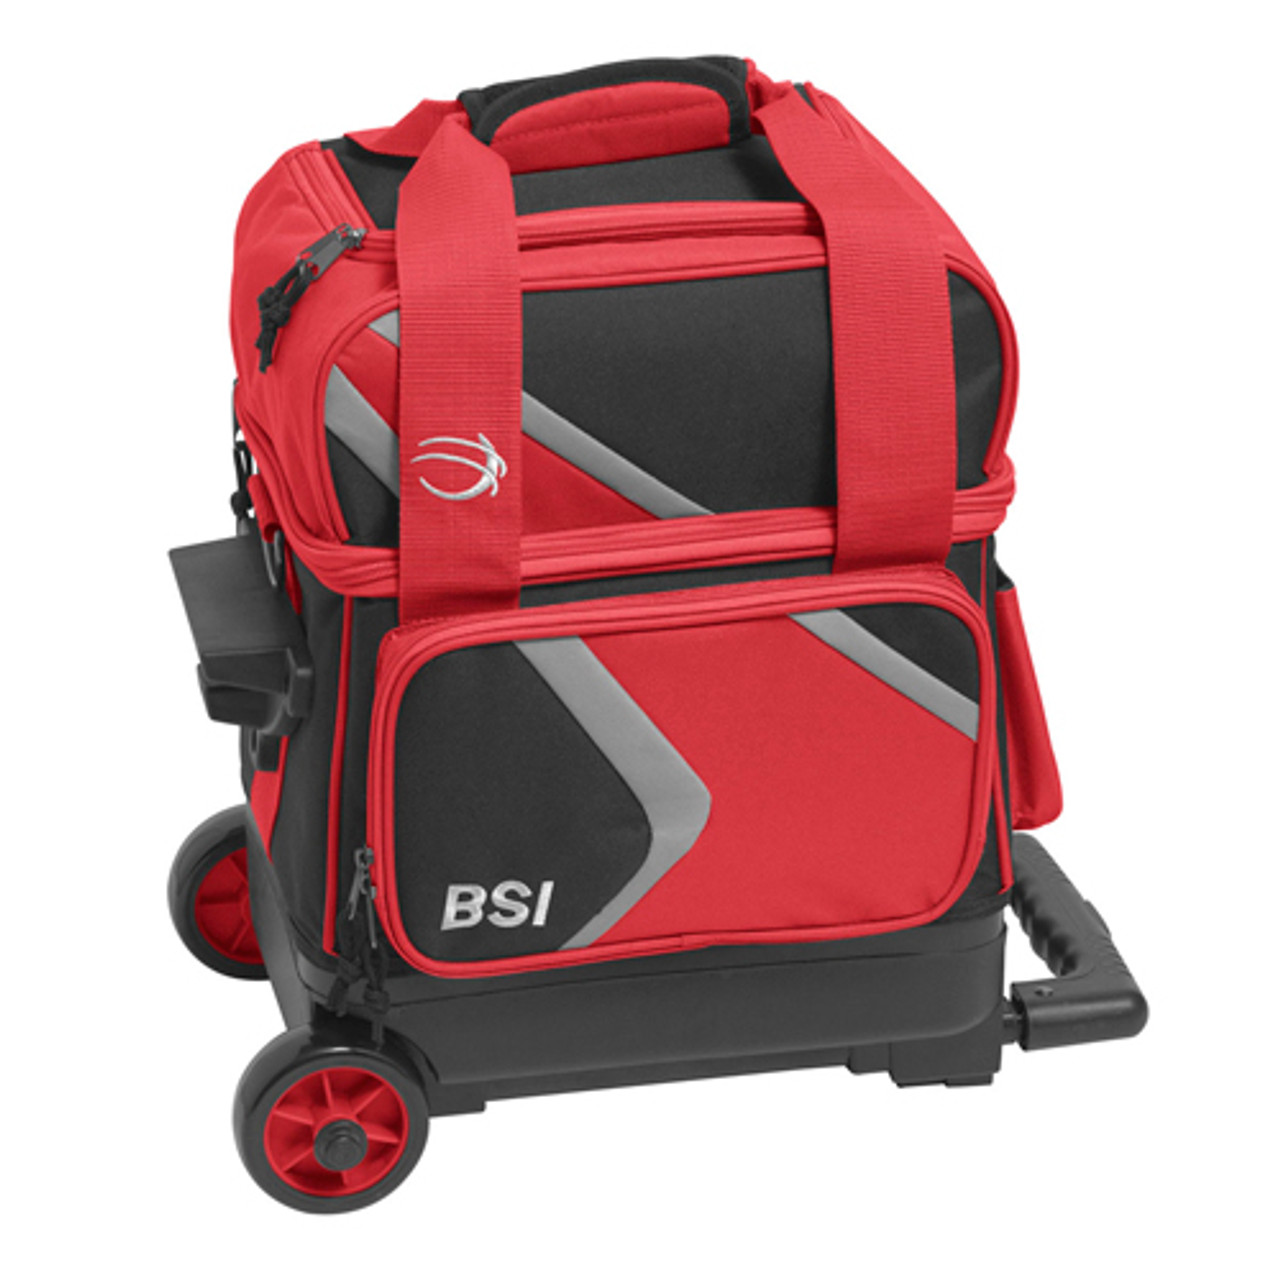 BSI Dash 1 Ball Roller Bag Black/Red